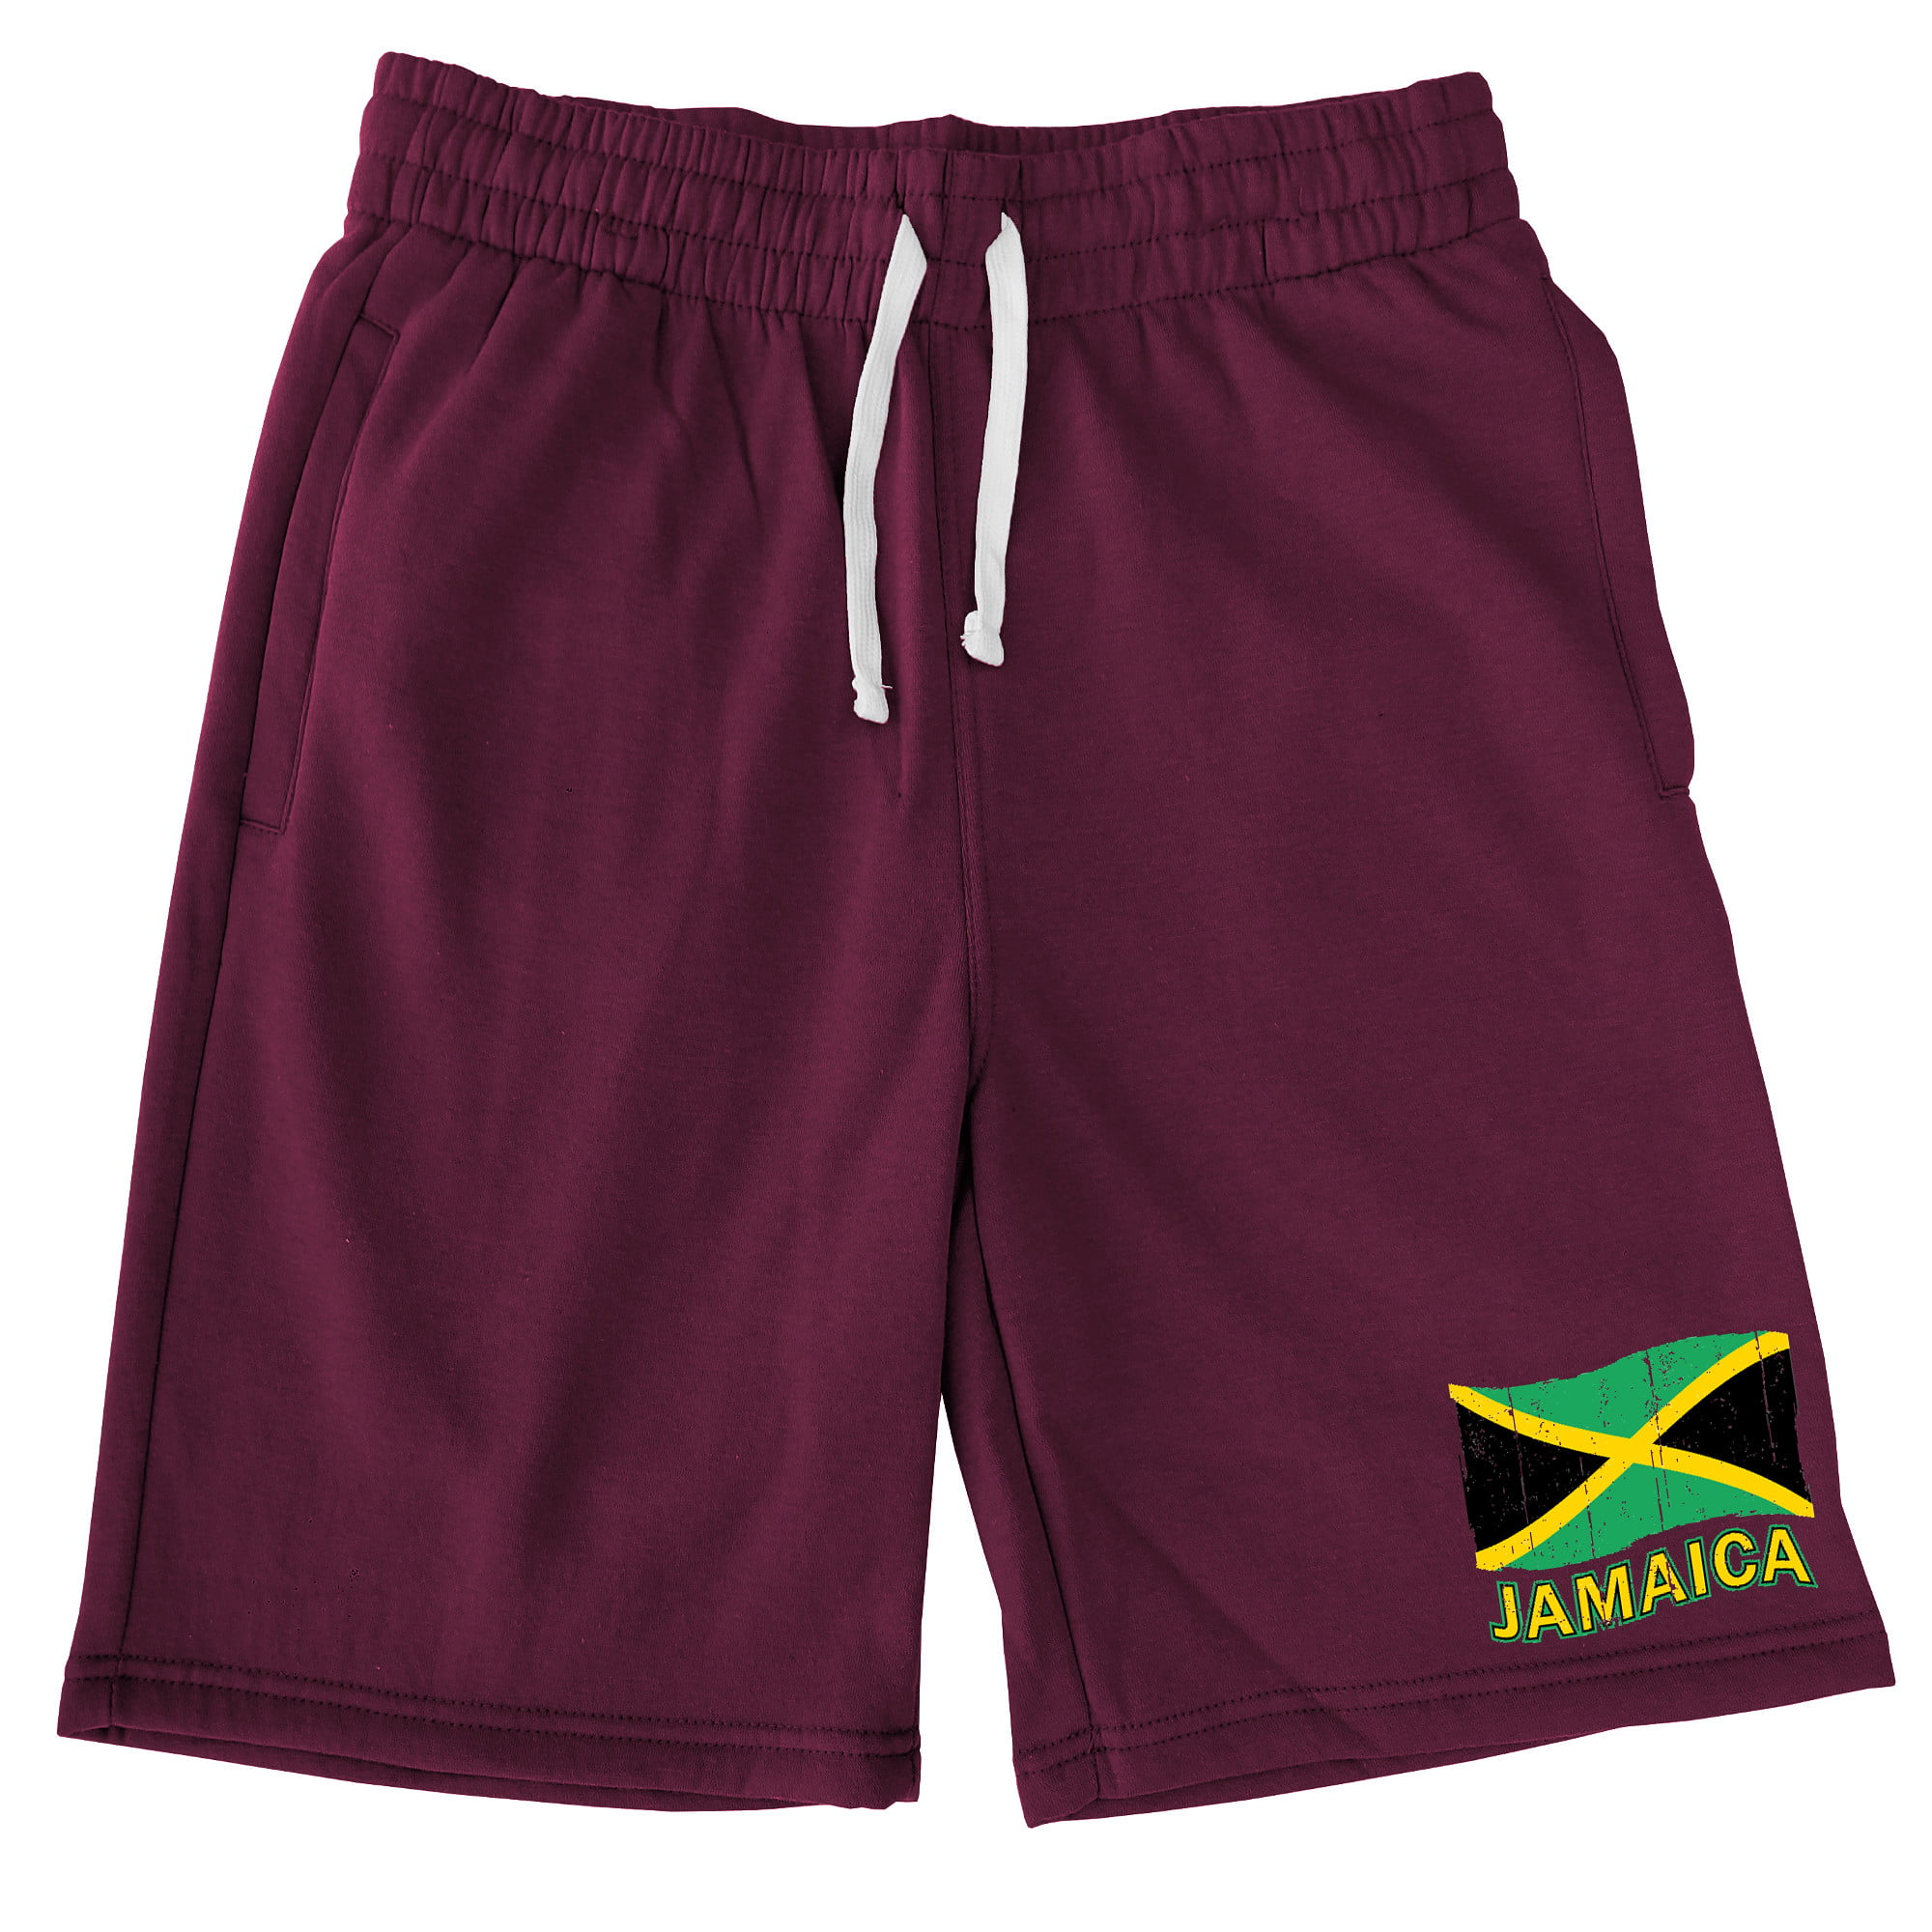 Ink Jamaica Flag Swim Beach Trunks Cargo Shorts For Mens